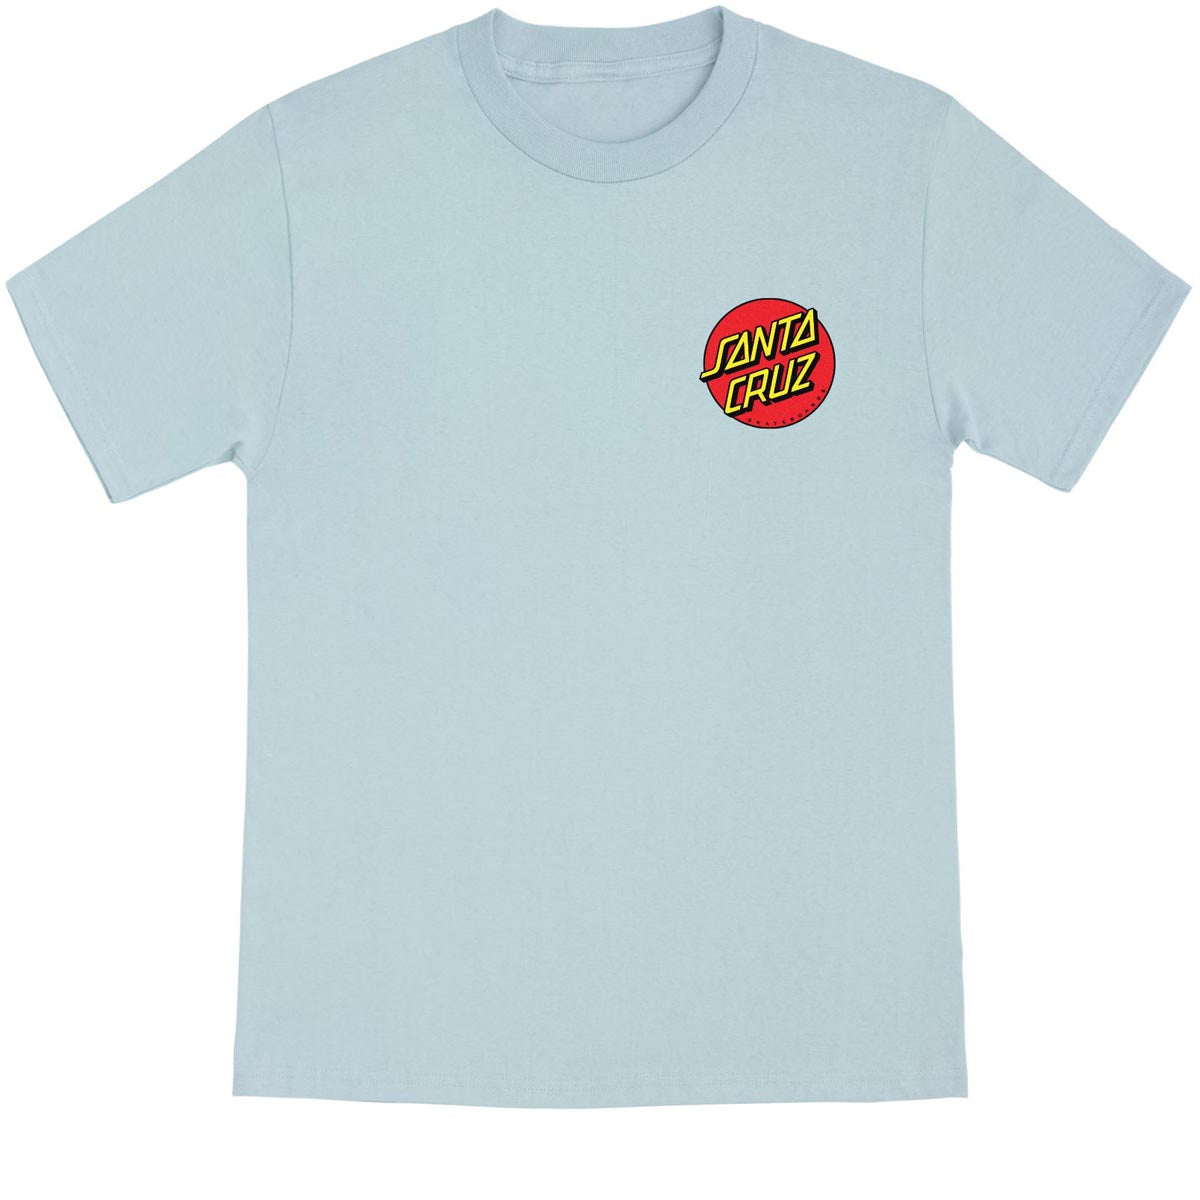 Santa Cruz Meek Slasher T-Shirt - Good Grey image 2